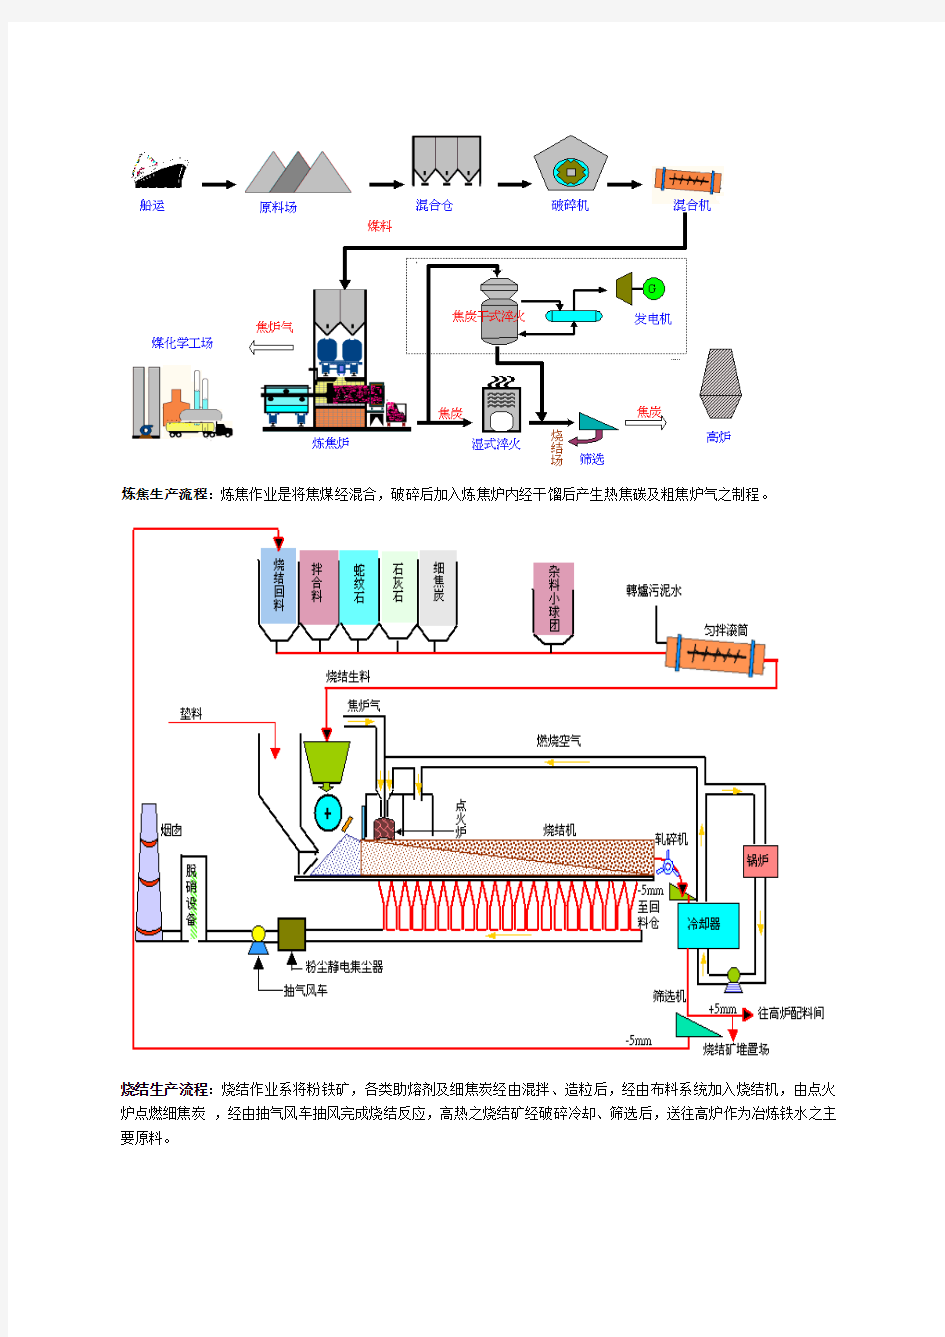 炼钢生产过程及流程图详解 全 